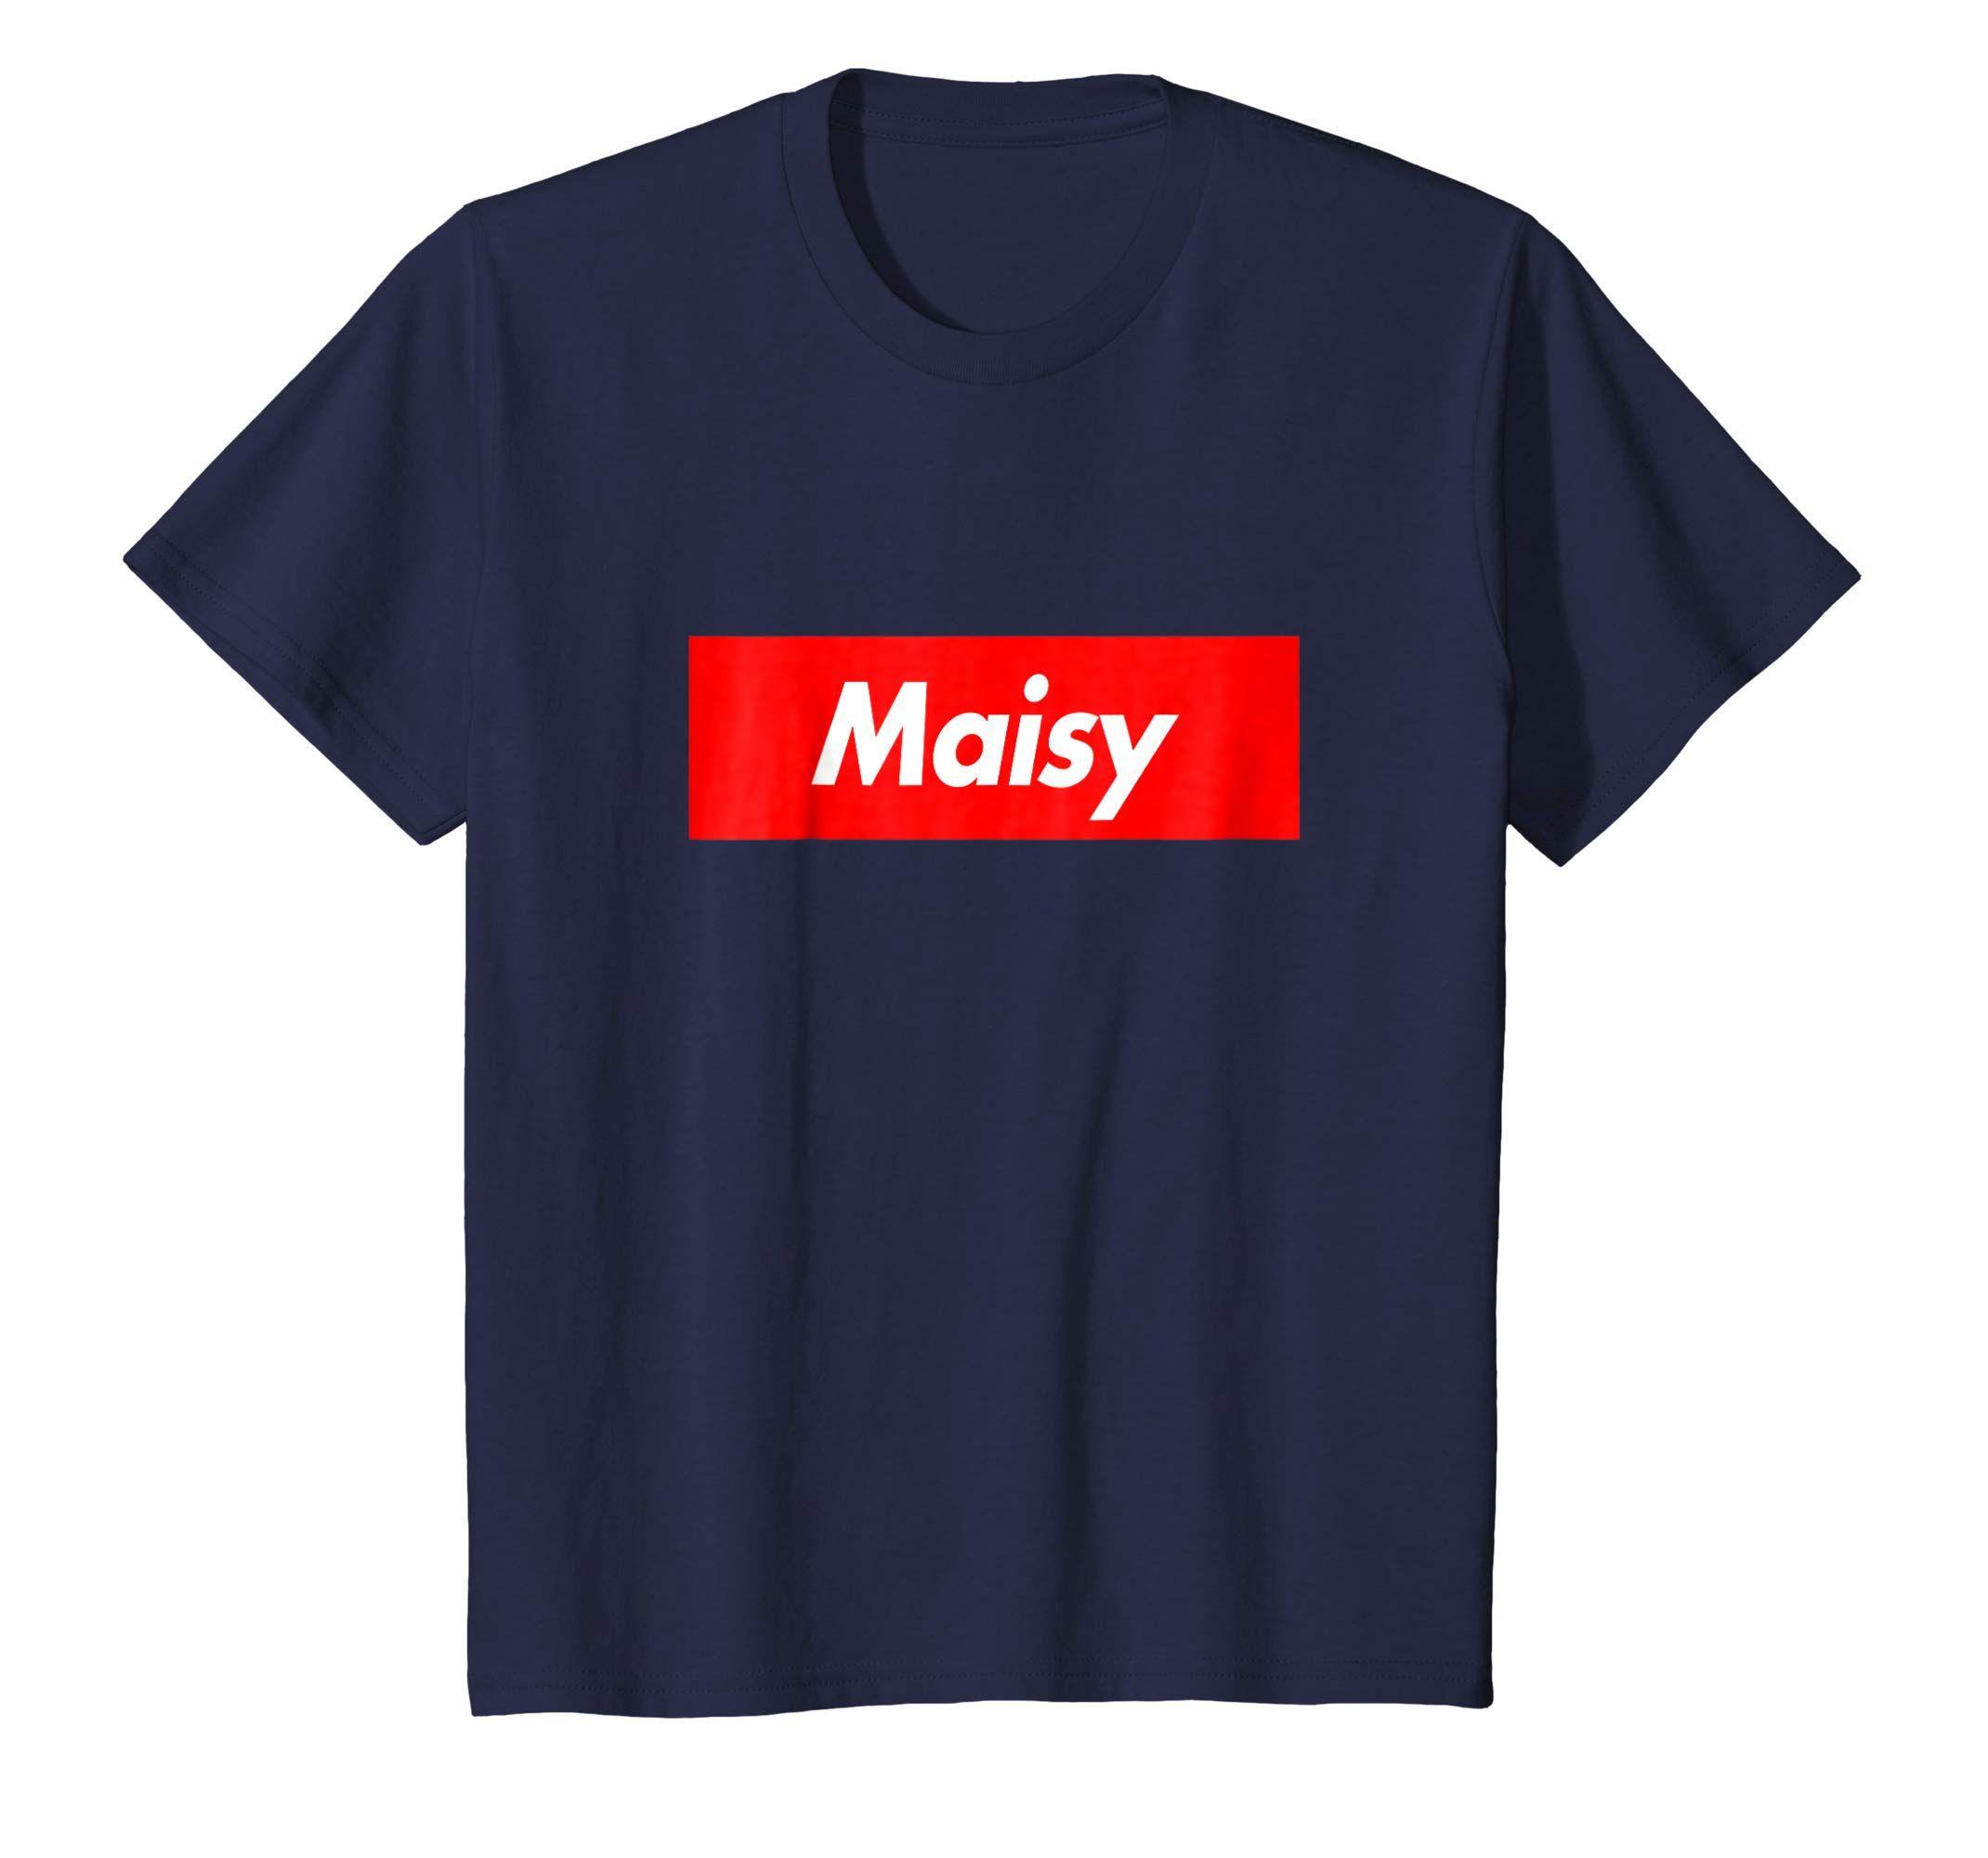 Maisy Logo - Amazon.com: Maisy Box First Given Name Logo Funny T-Shirt: Clothing